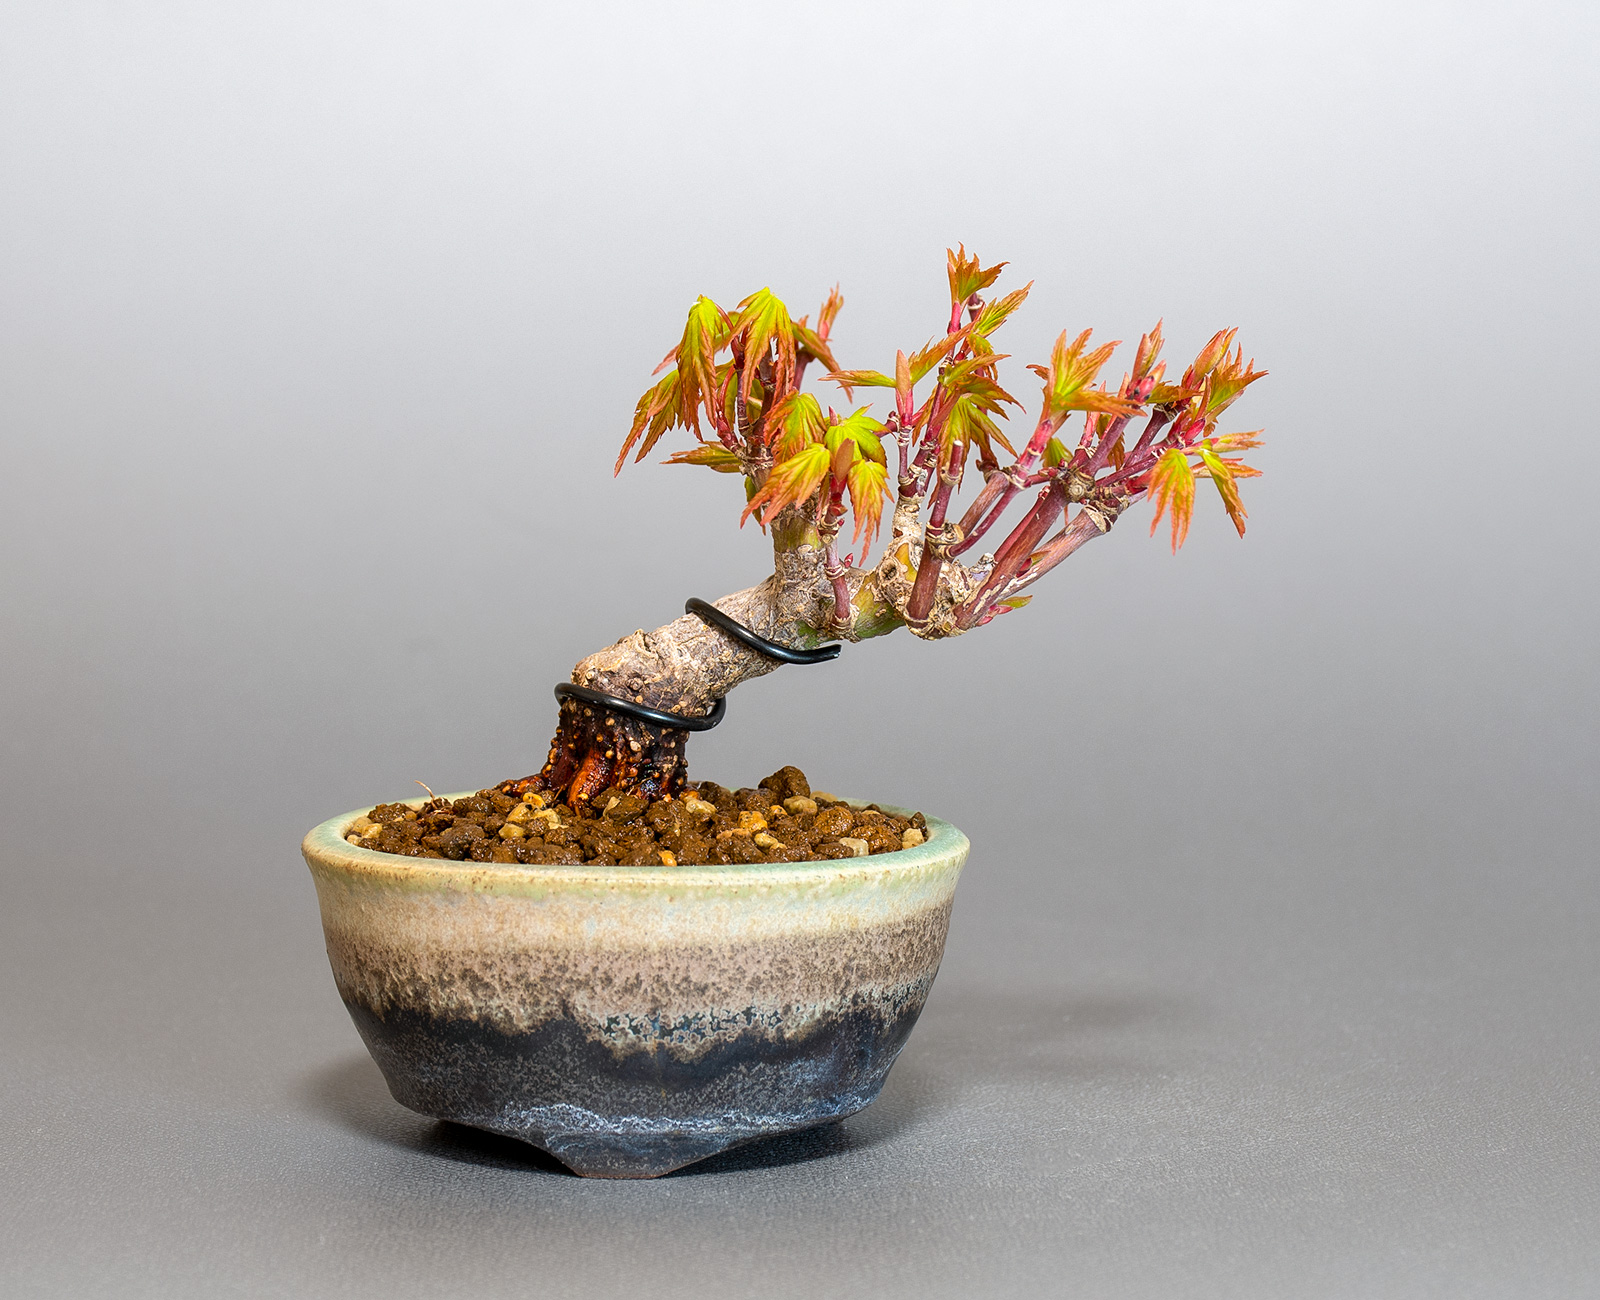 イロハモミジ-N1（いろはもみじ・いろは紅葉）雑木盆栽の販売と育て方・作り方・Acer palmatum bonsai